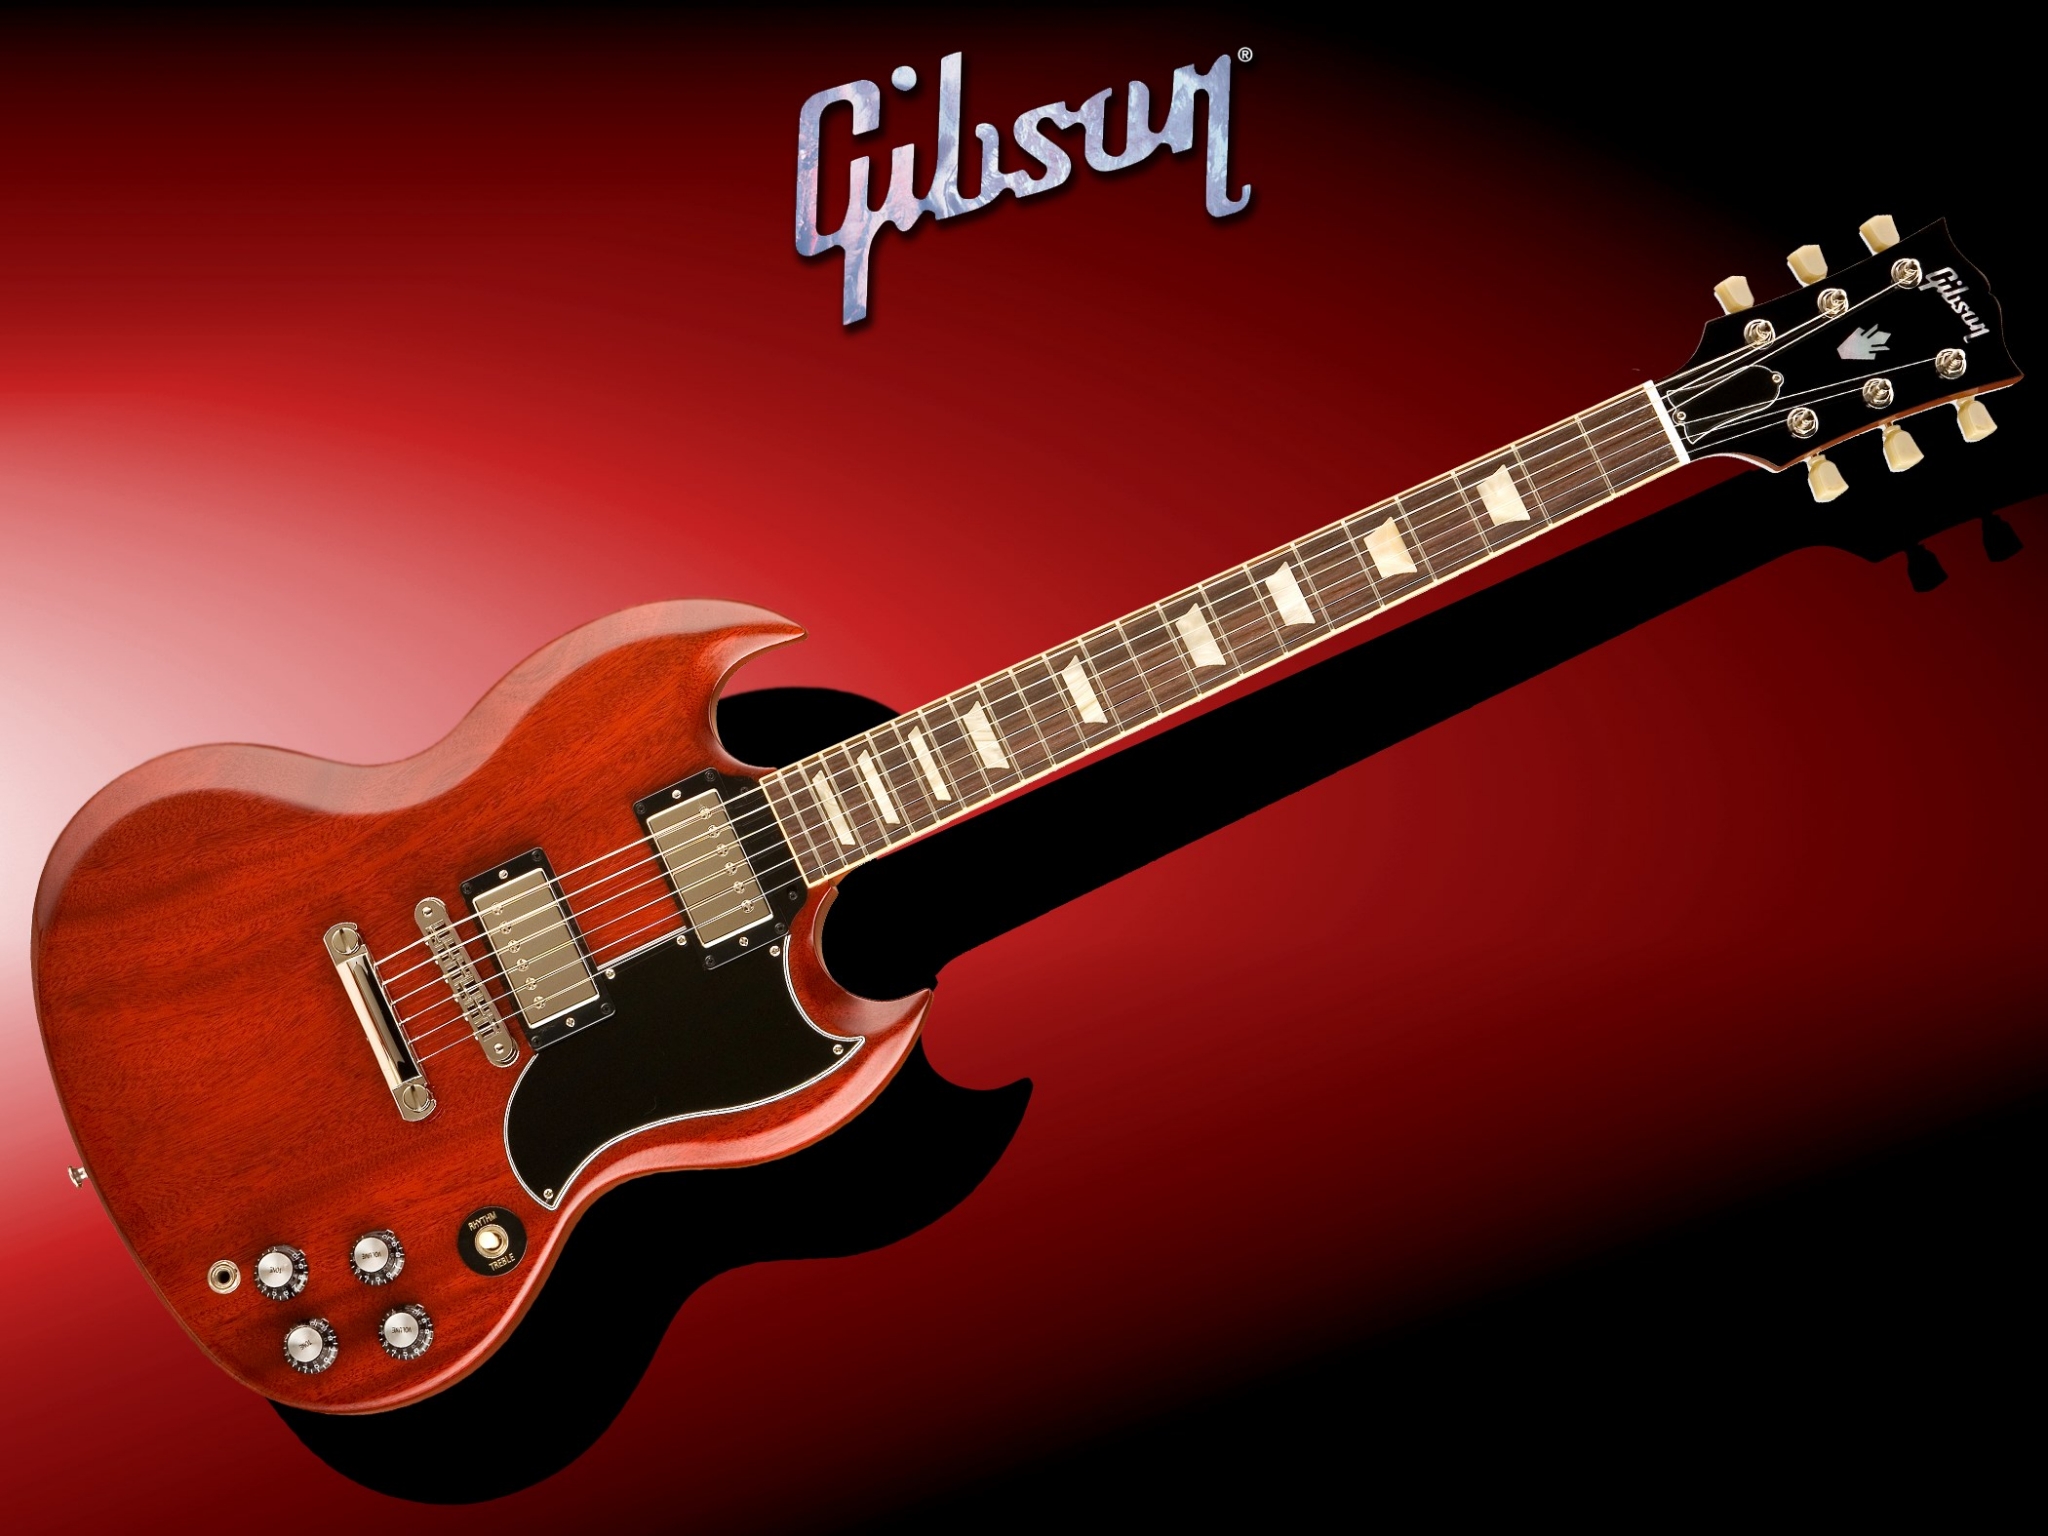 Gibson Sg , HD Wallpaper & Backgrounds